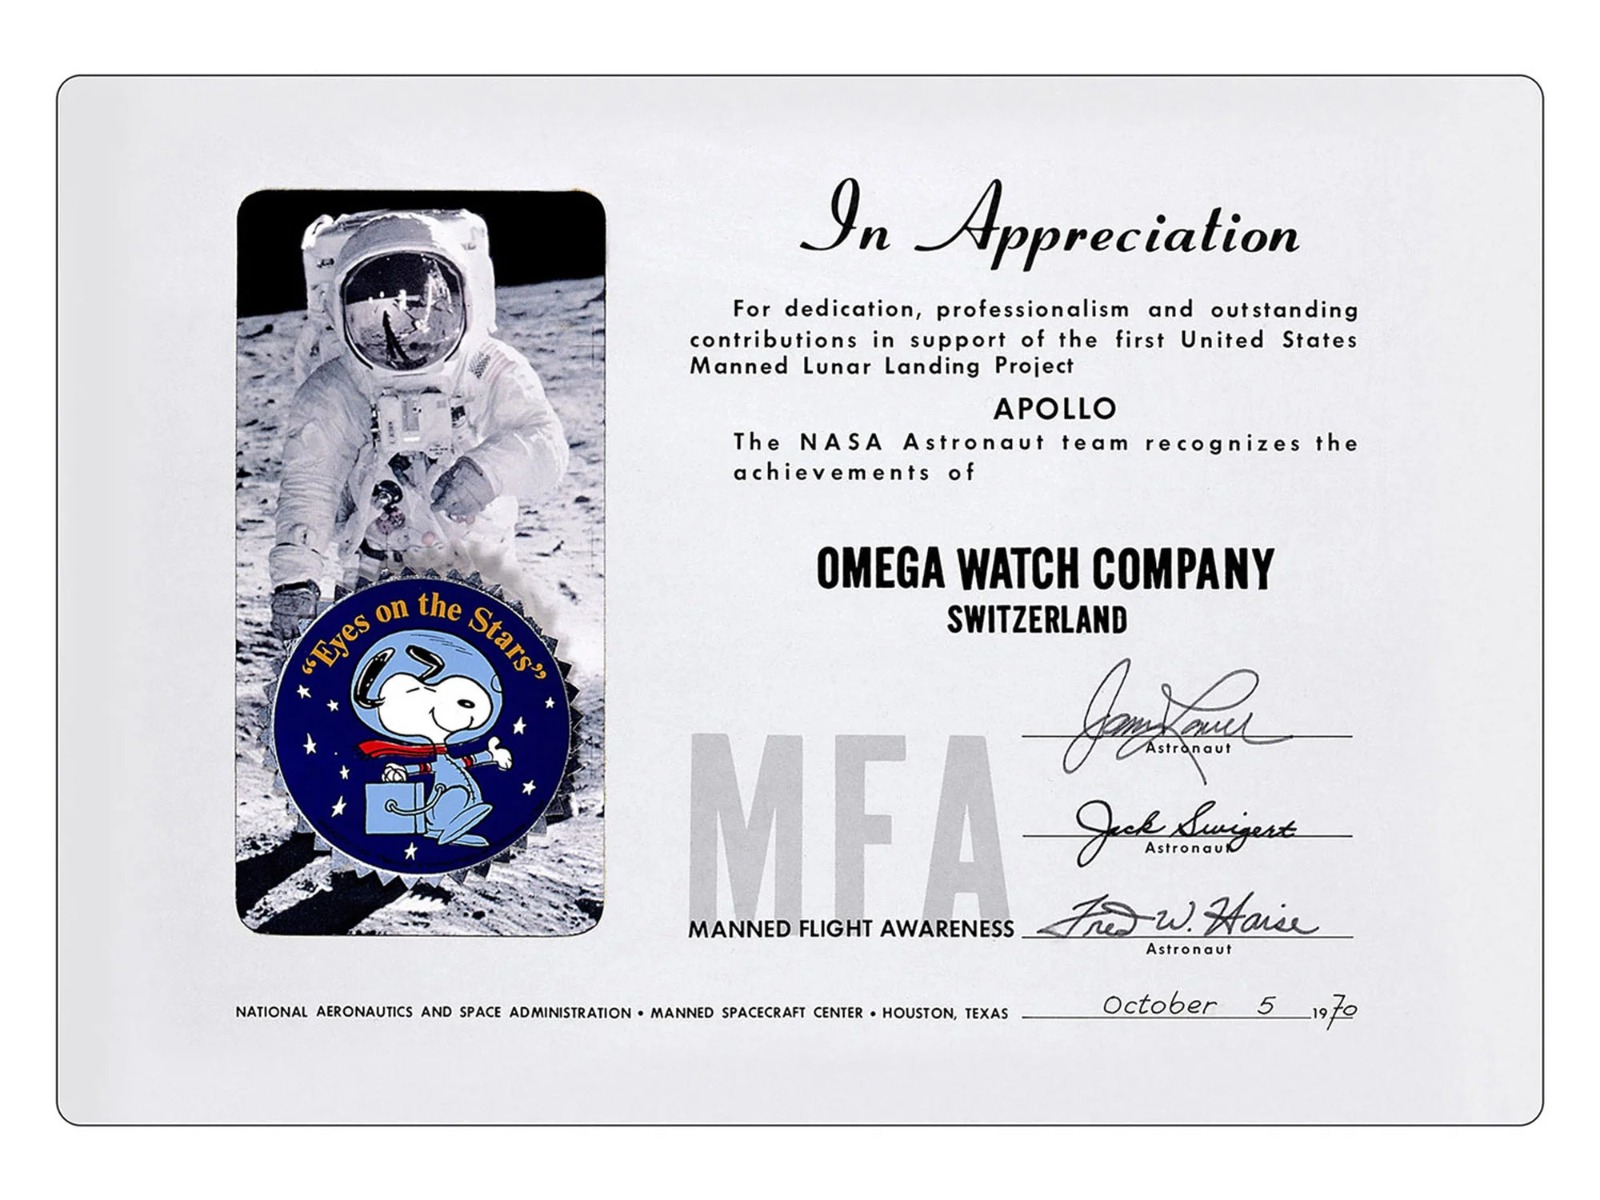 Сотрудничество Omega, NASA и Snoopy: историческое путешествие